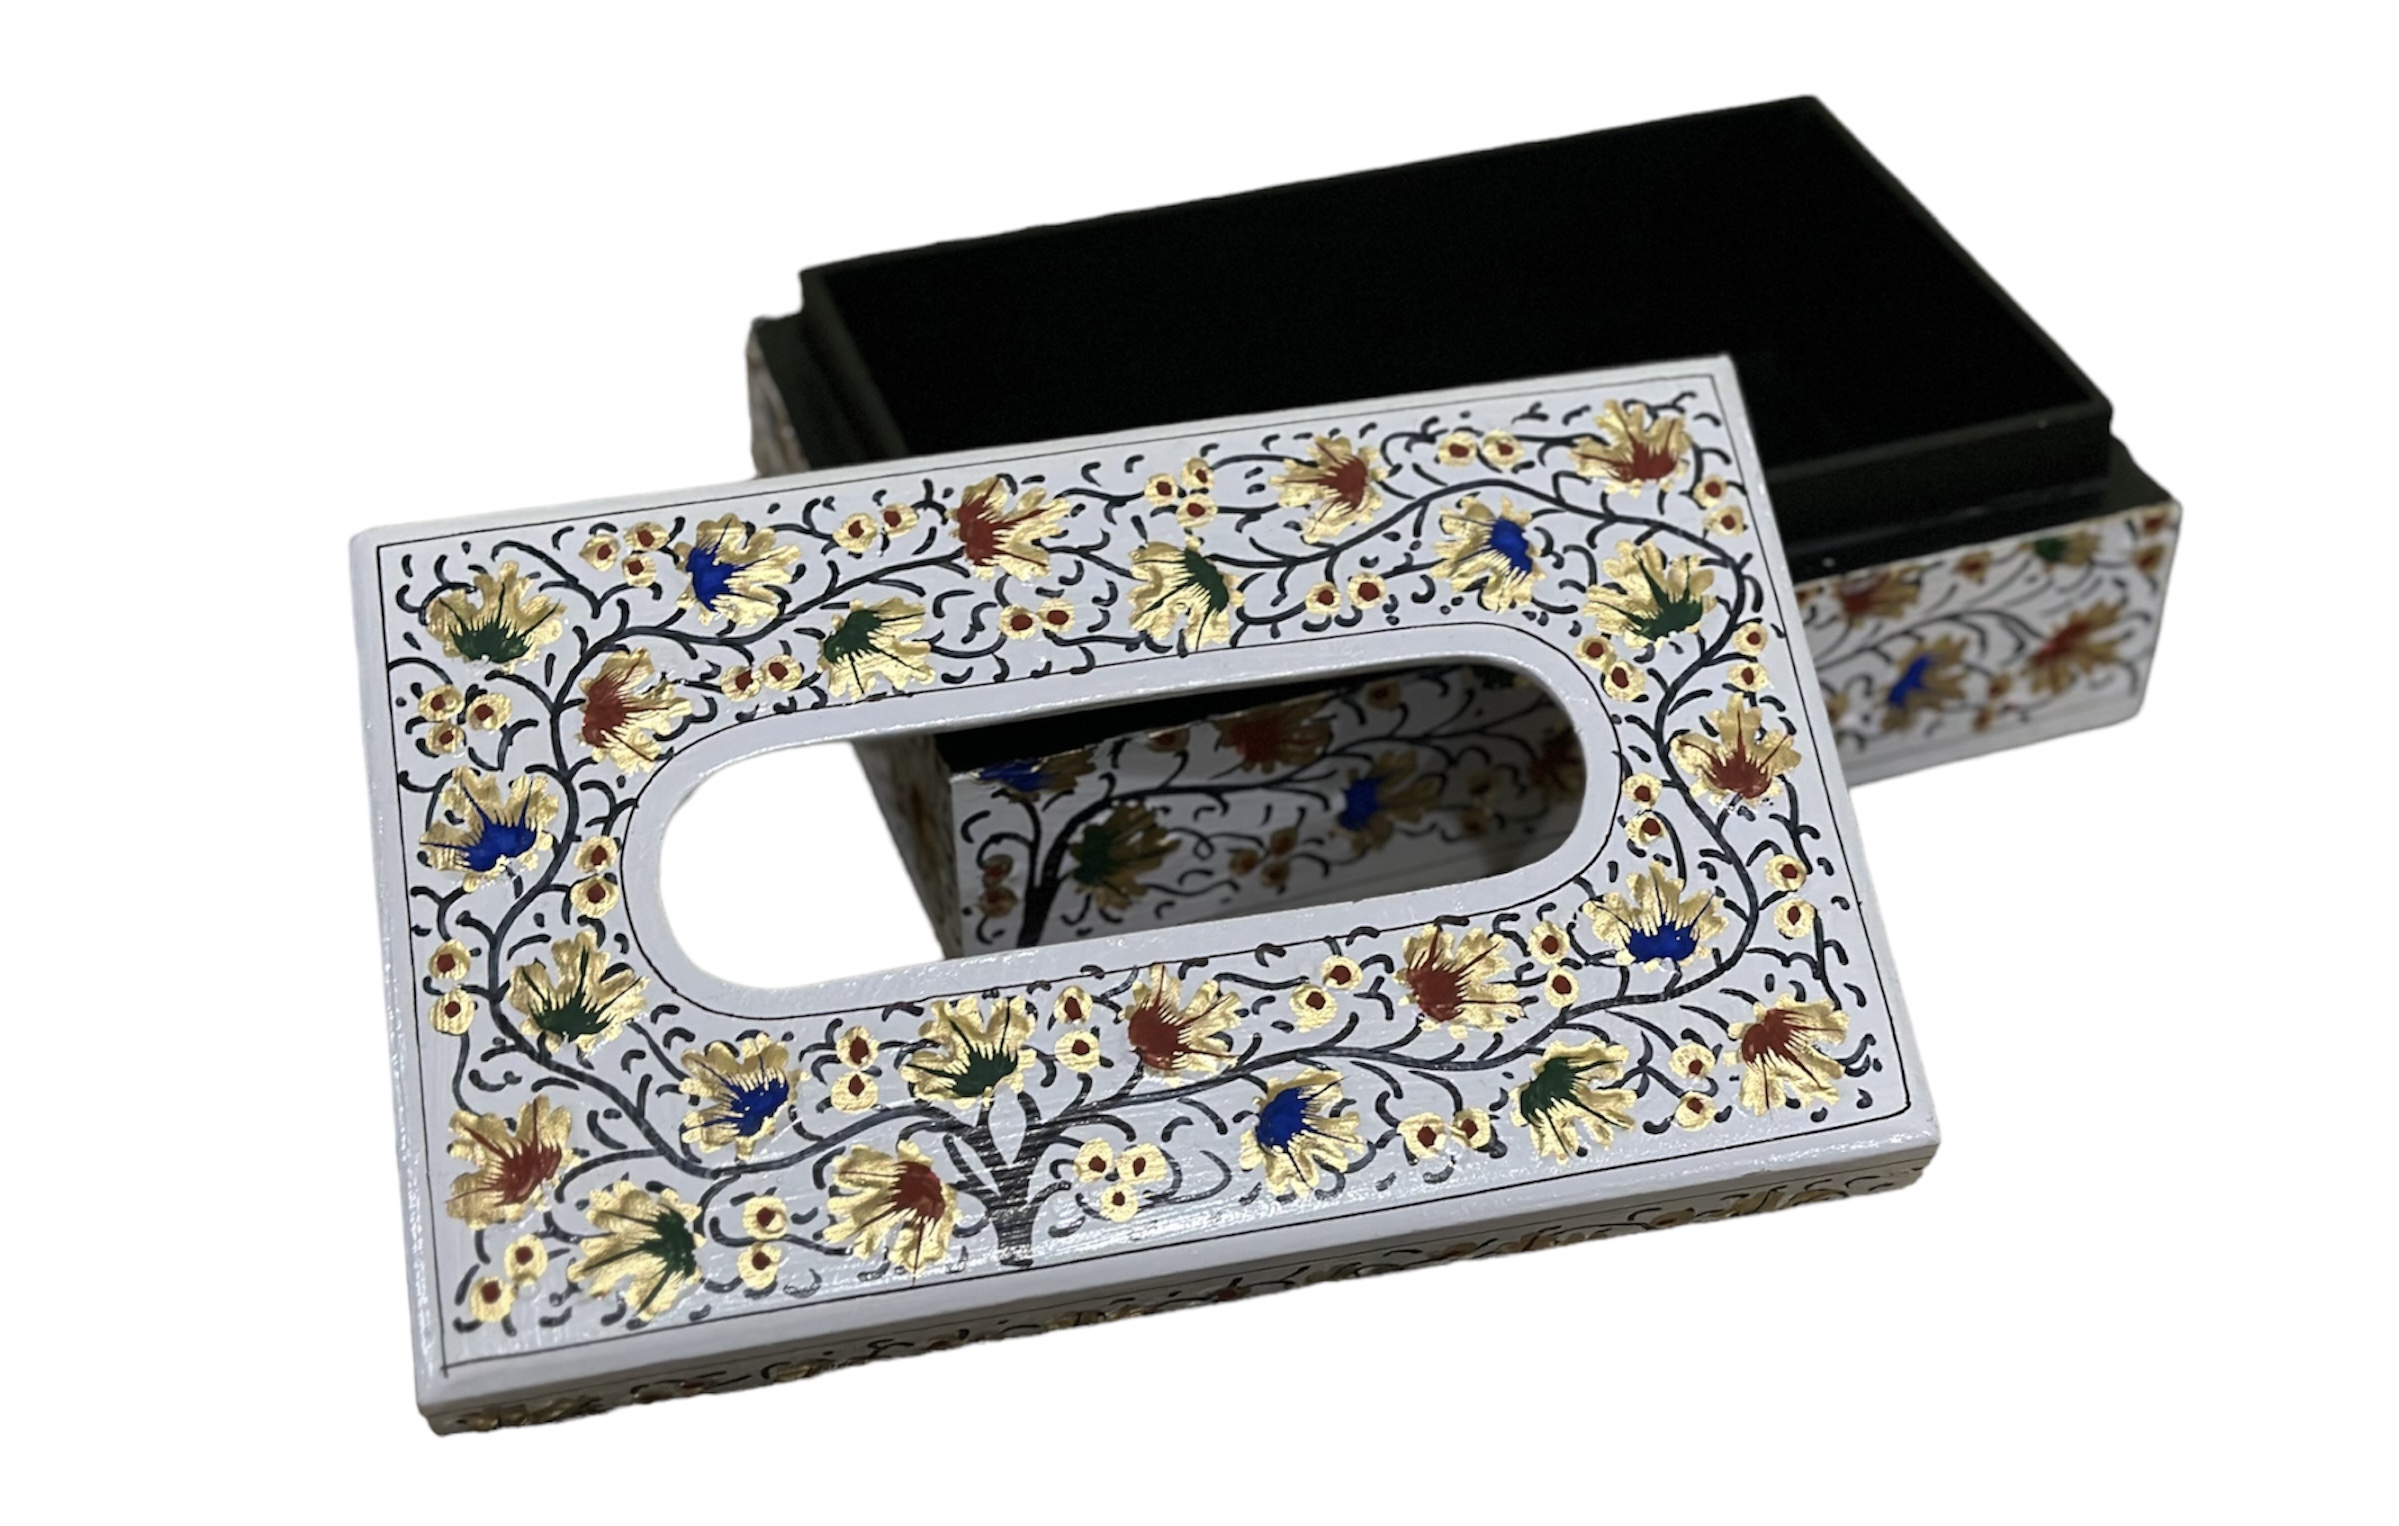 Paper mache tissue box, hand painted tissue holder, colorful kashmiri paper mache box